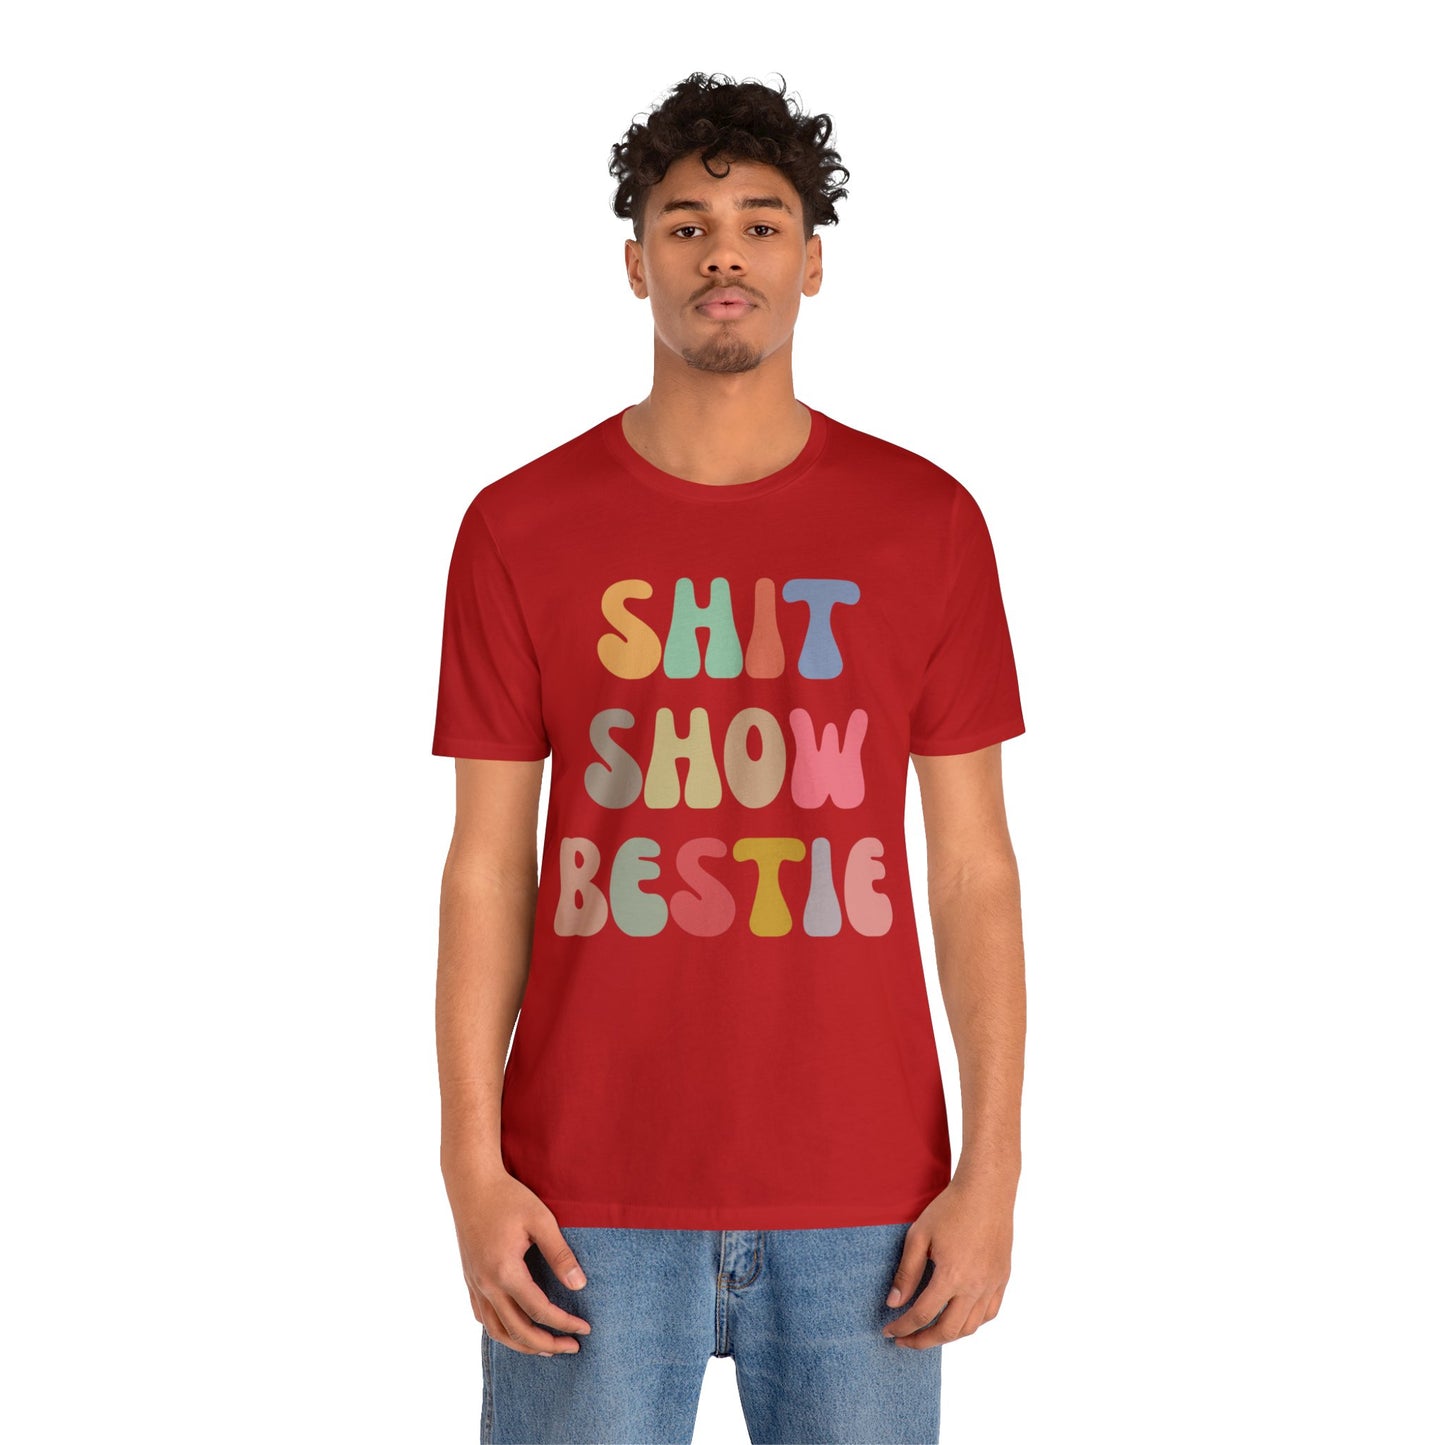 Shit Show Bestie Shirt, BFF Shirt for Women, Funny Best Friend Shirt, Forever Bestie Shirt, Matching Besties Shirt, Best Friend Gift, T1306